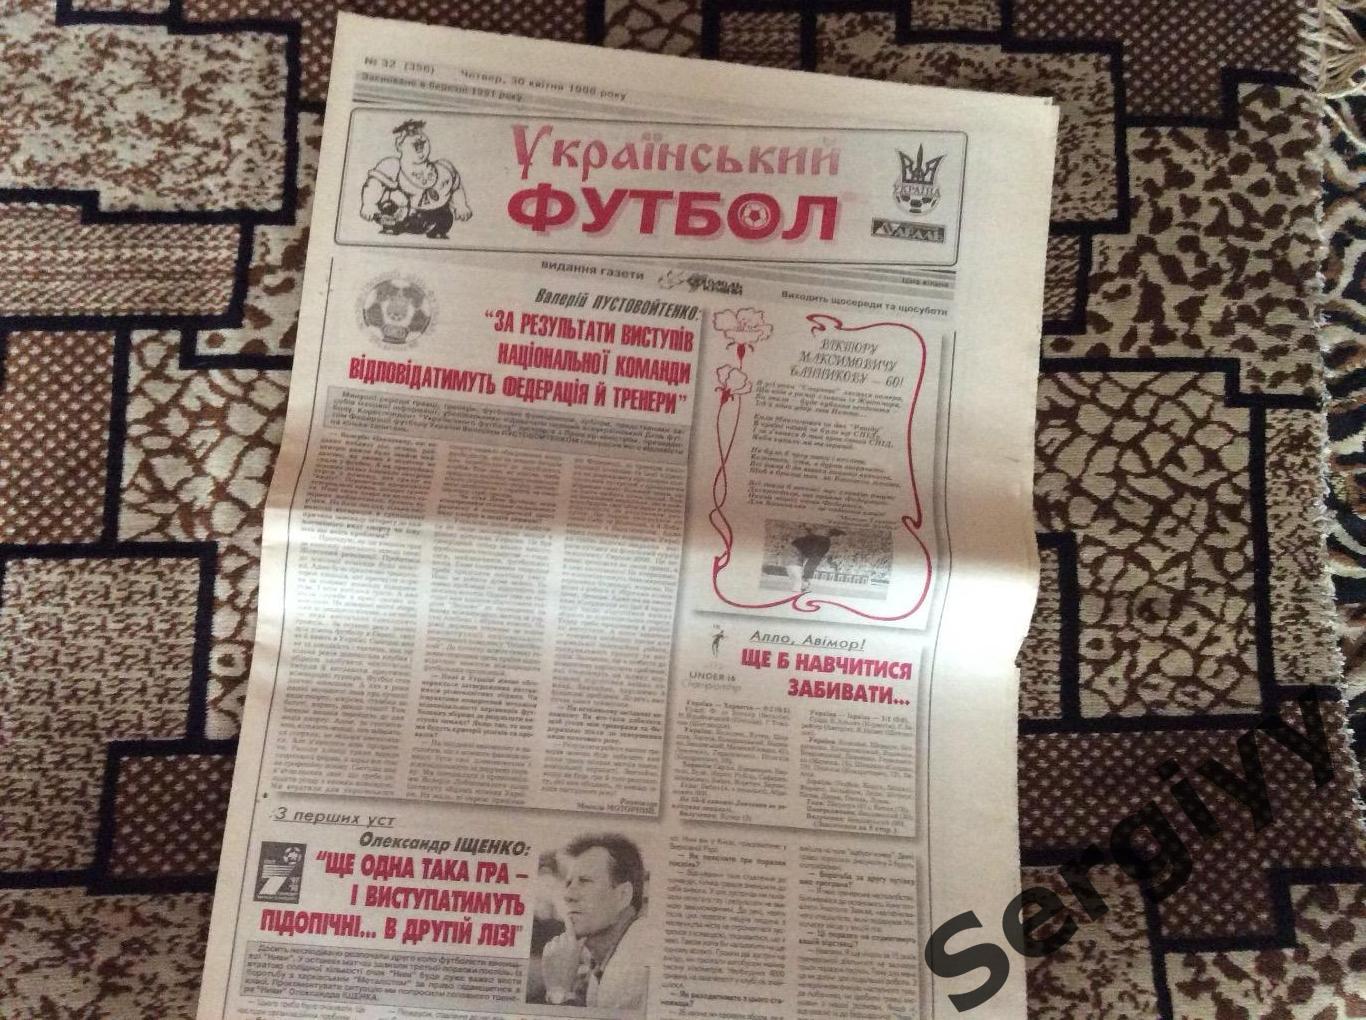 Український футбол номер 32 від 30.04.1998р